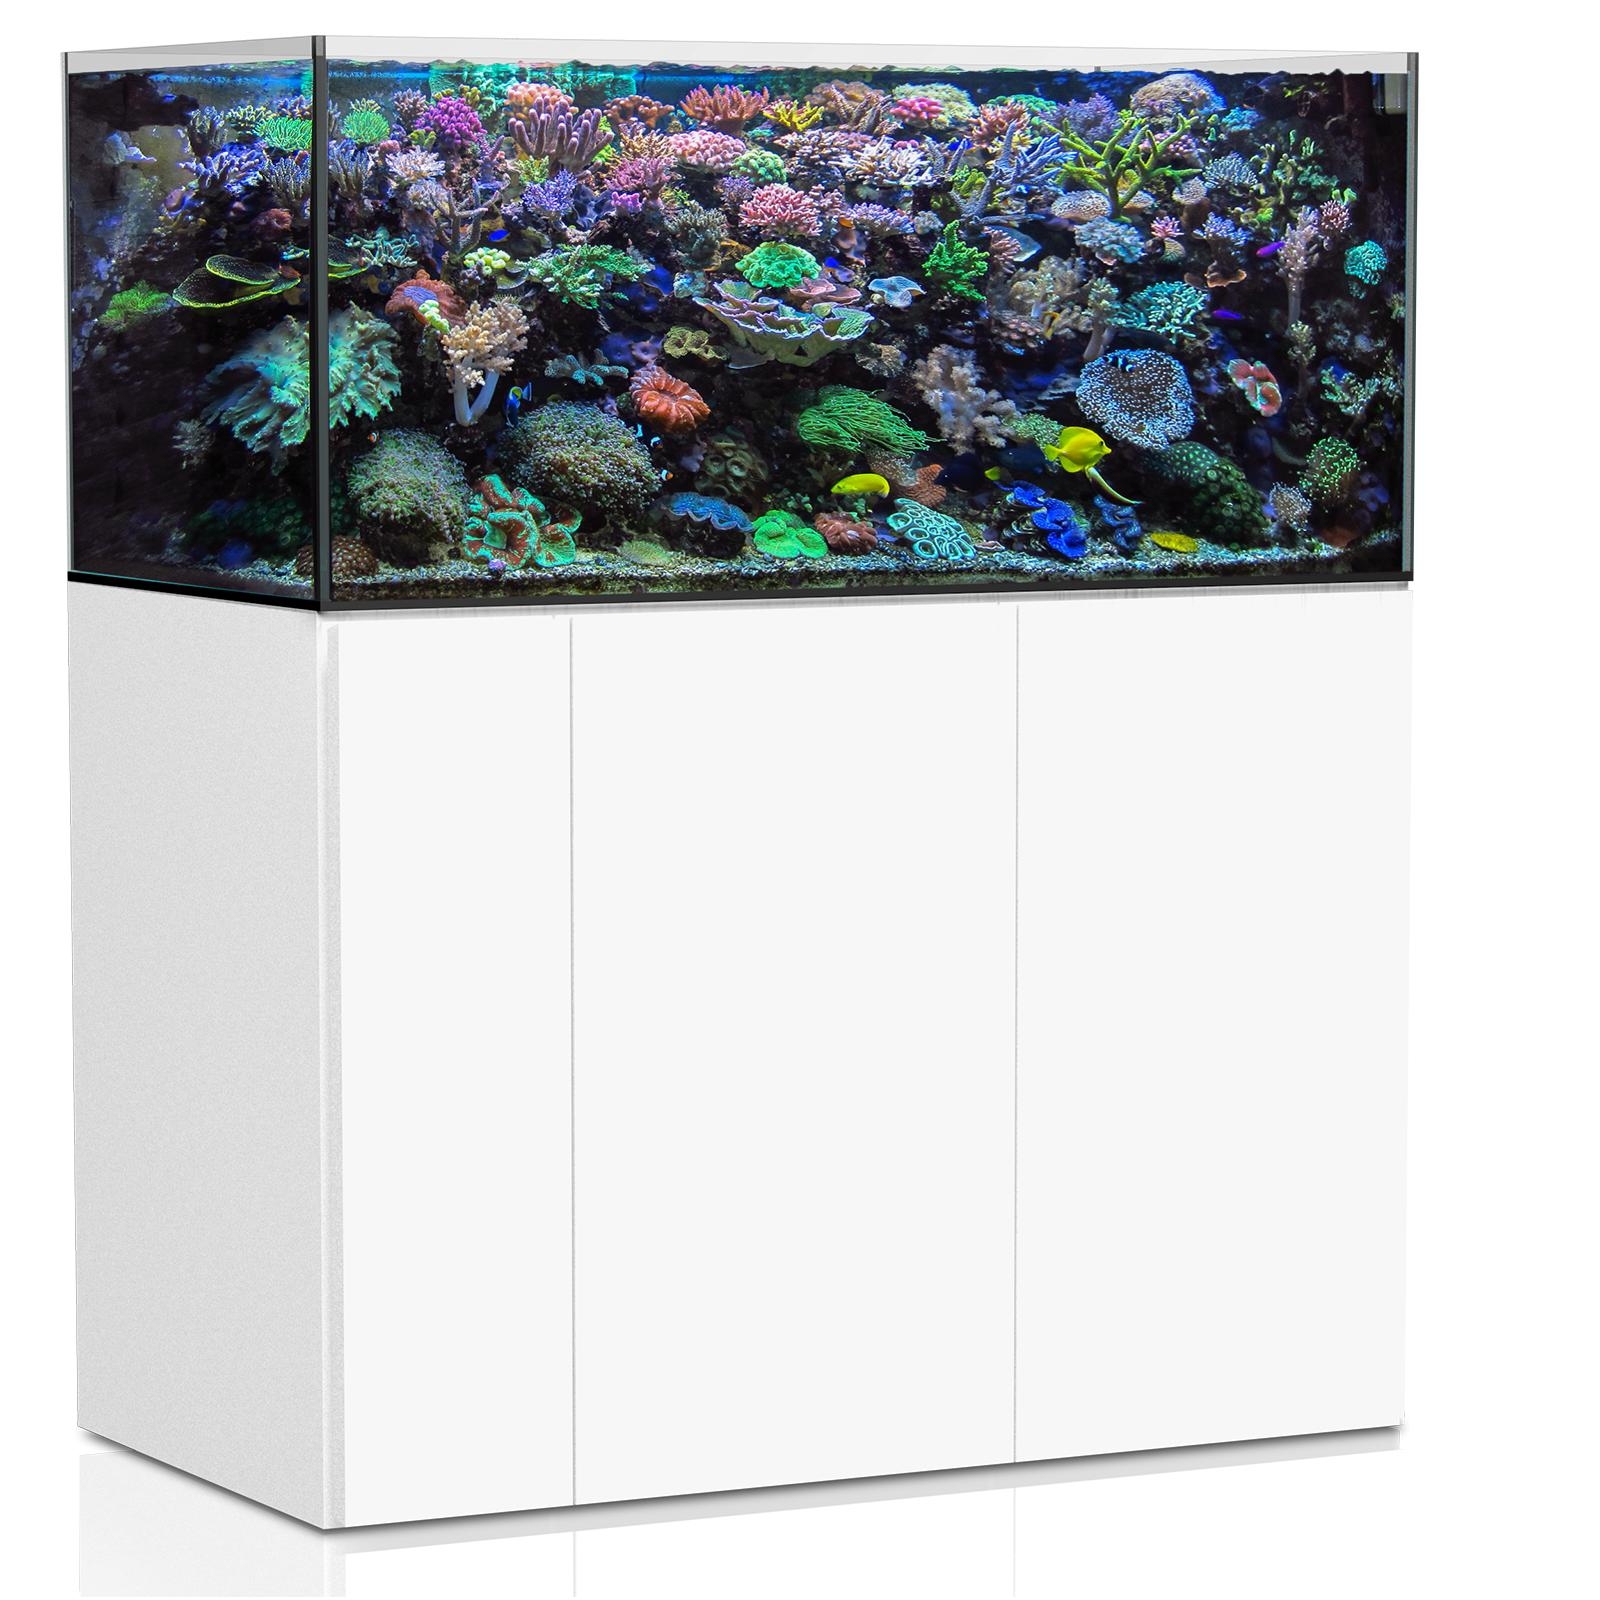  Aqua Medic Aquarium - Armatus 500 XD white